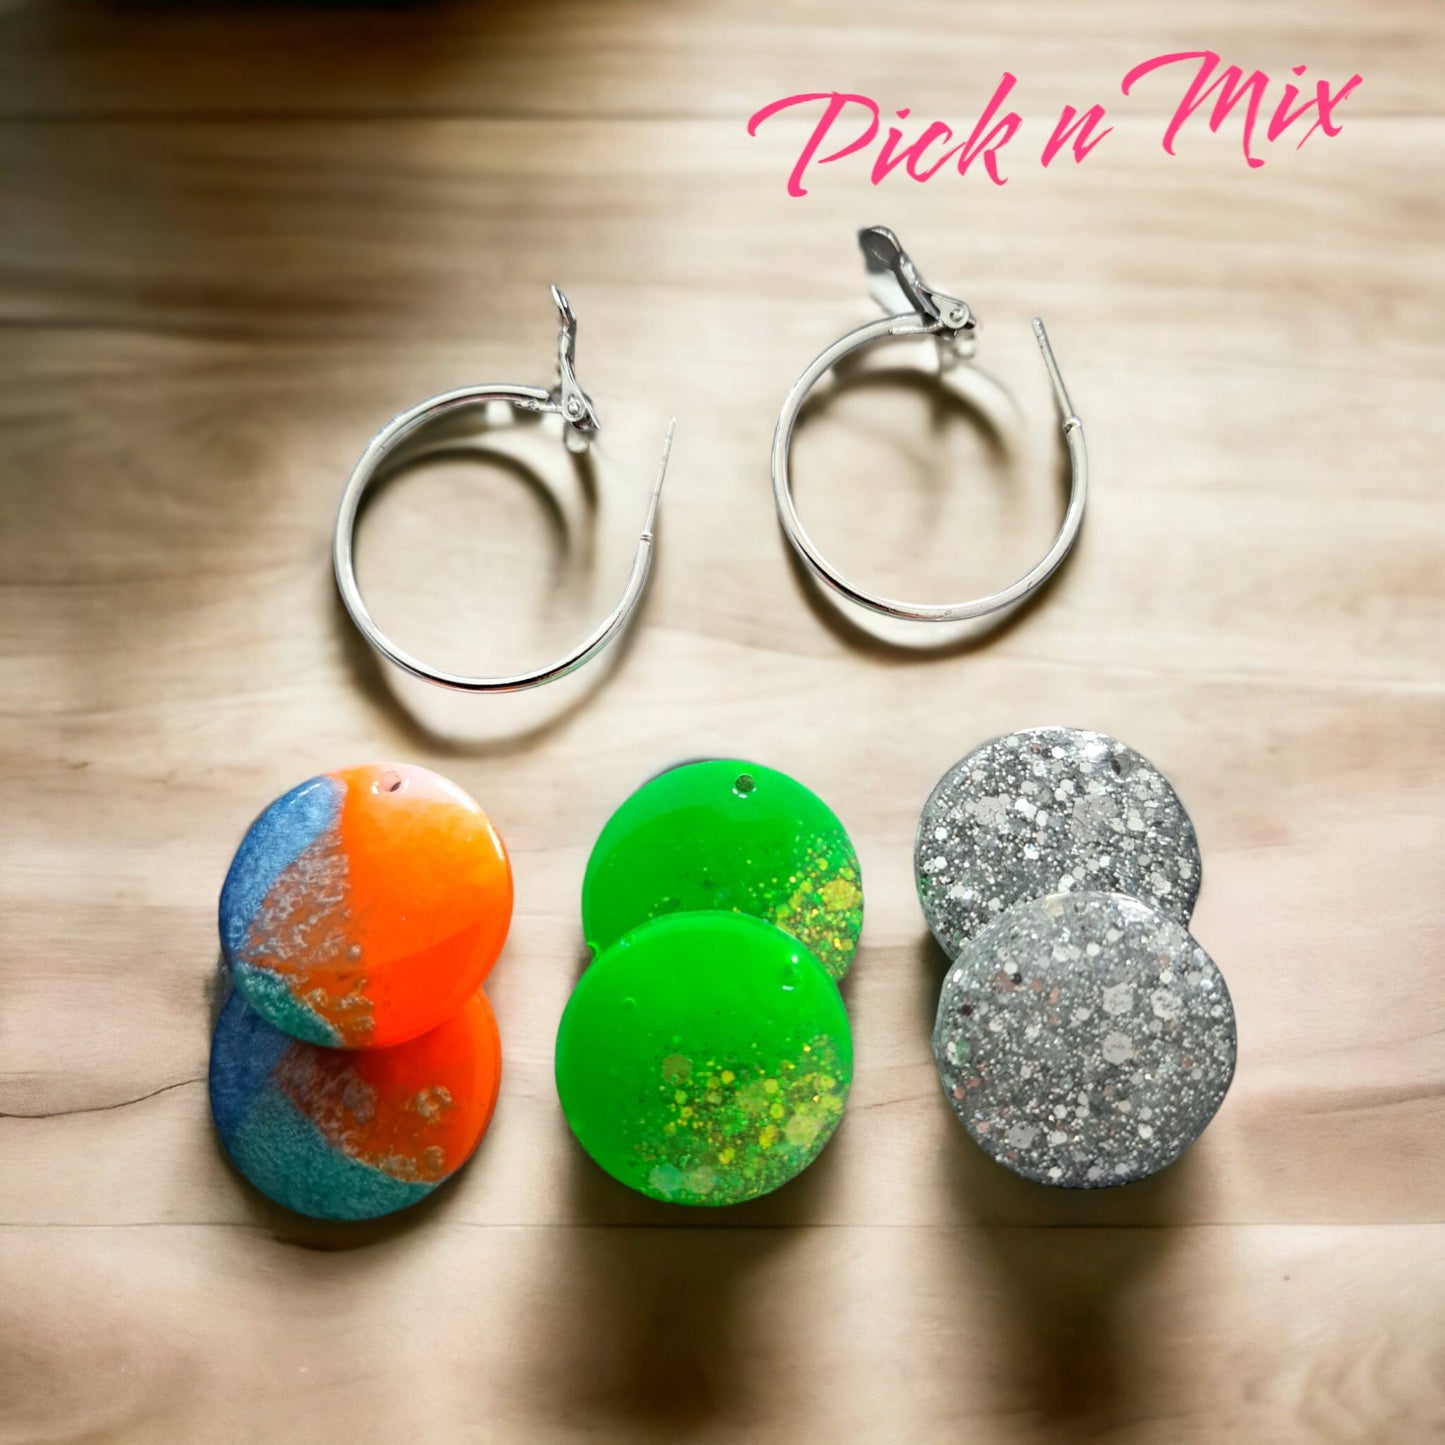 Pick n Mix - Ear Candy by Naomi Pick n Mix